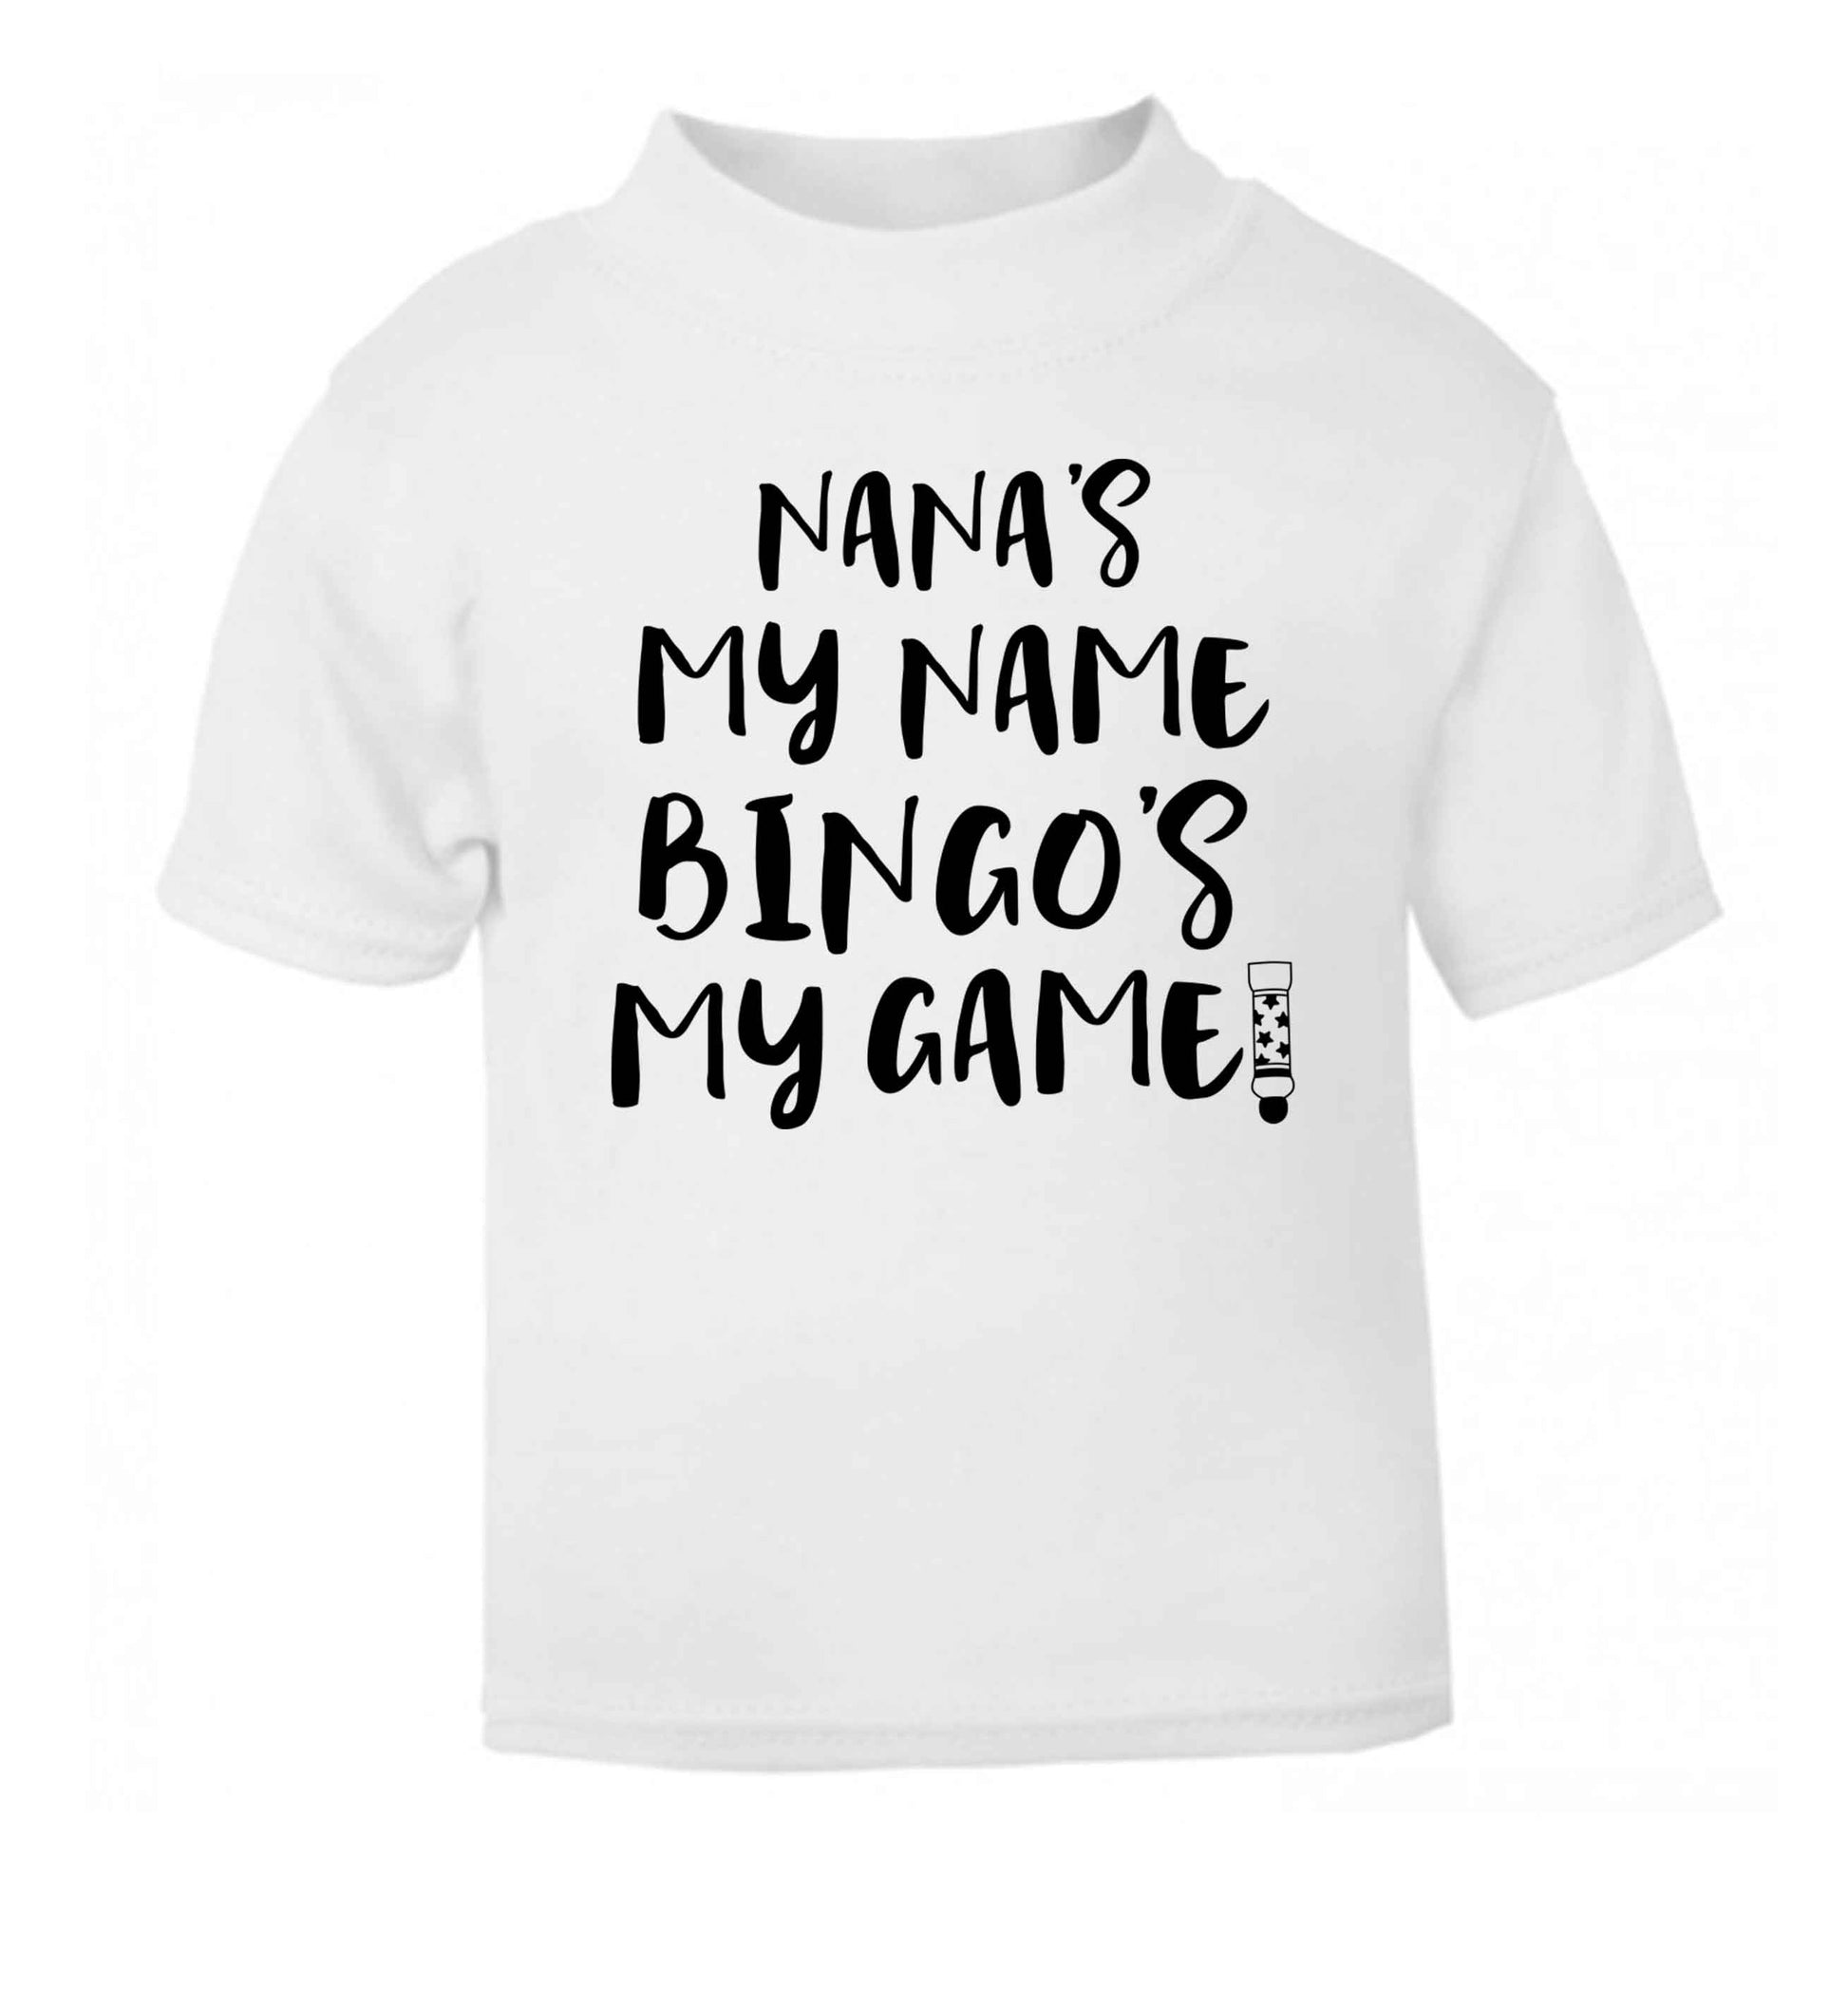 Nana's my name bingo's my game! white Baby Toddler Tshirt 2 Years